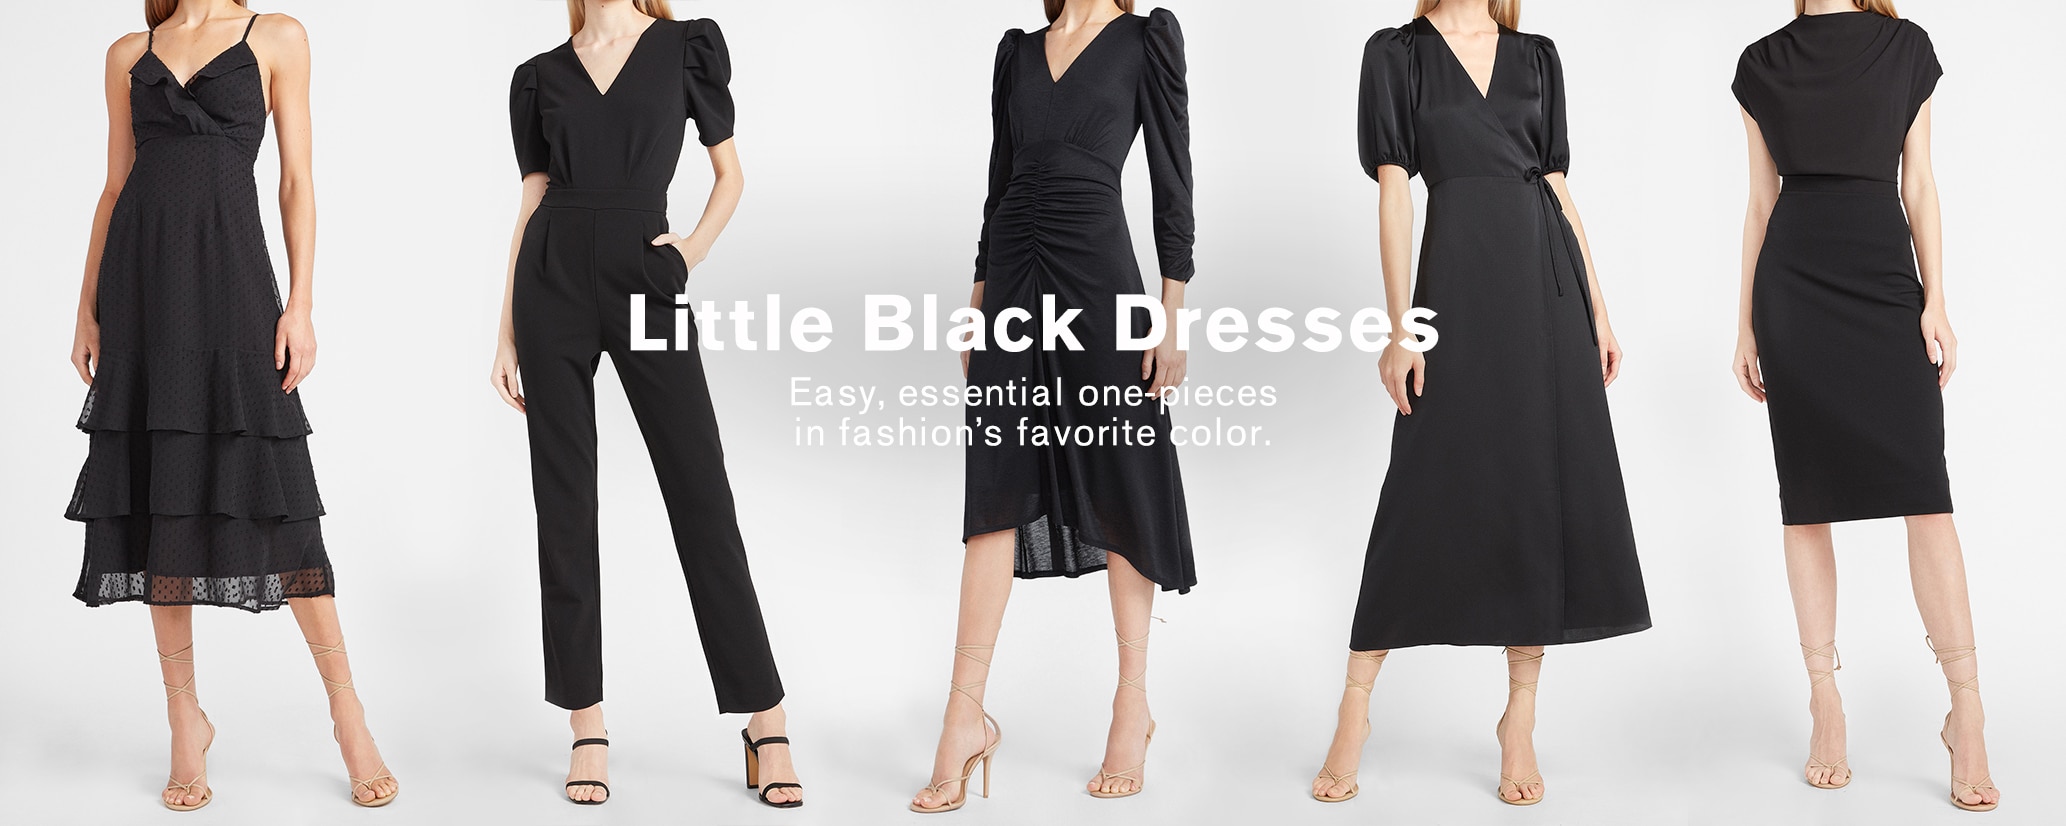 ladies petite black dresses